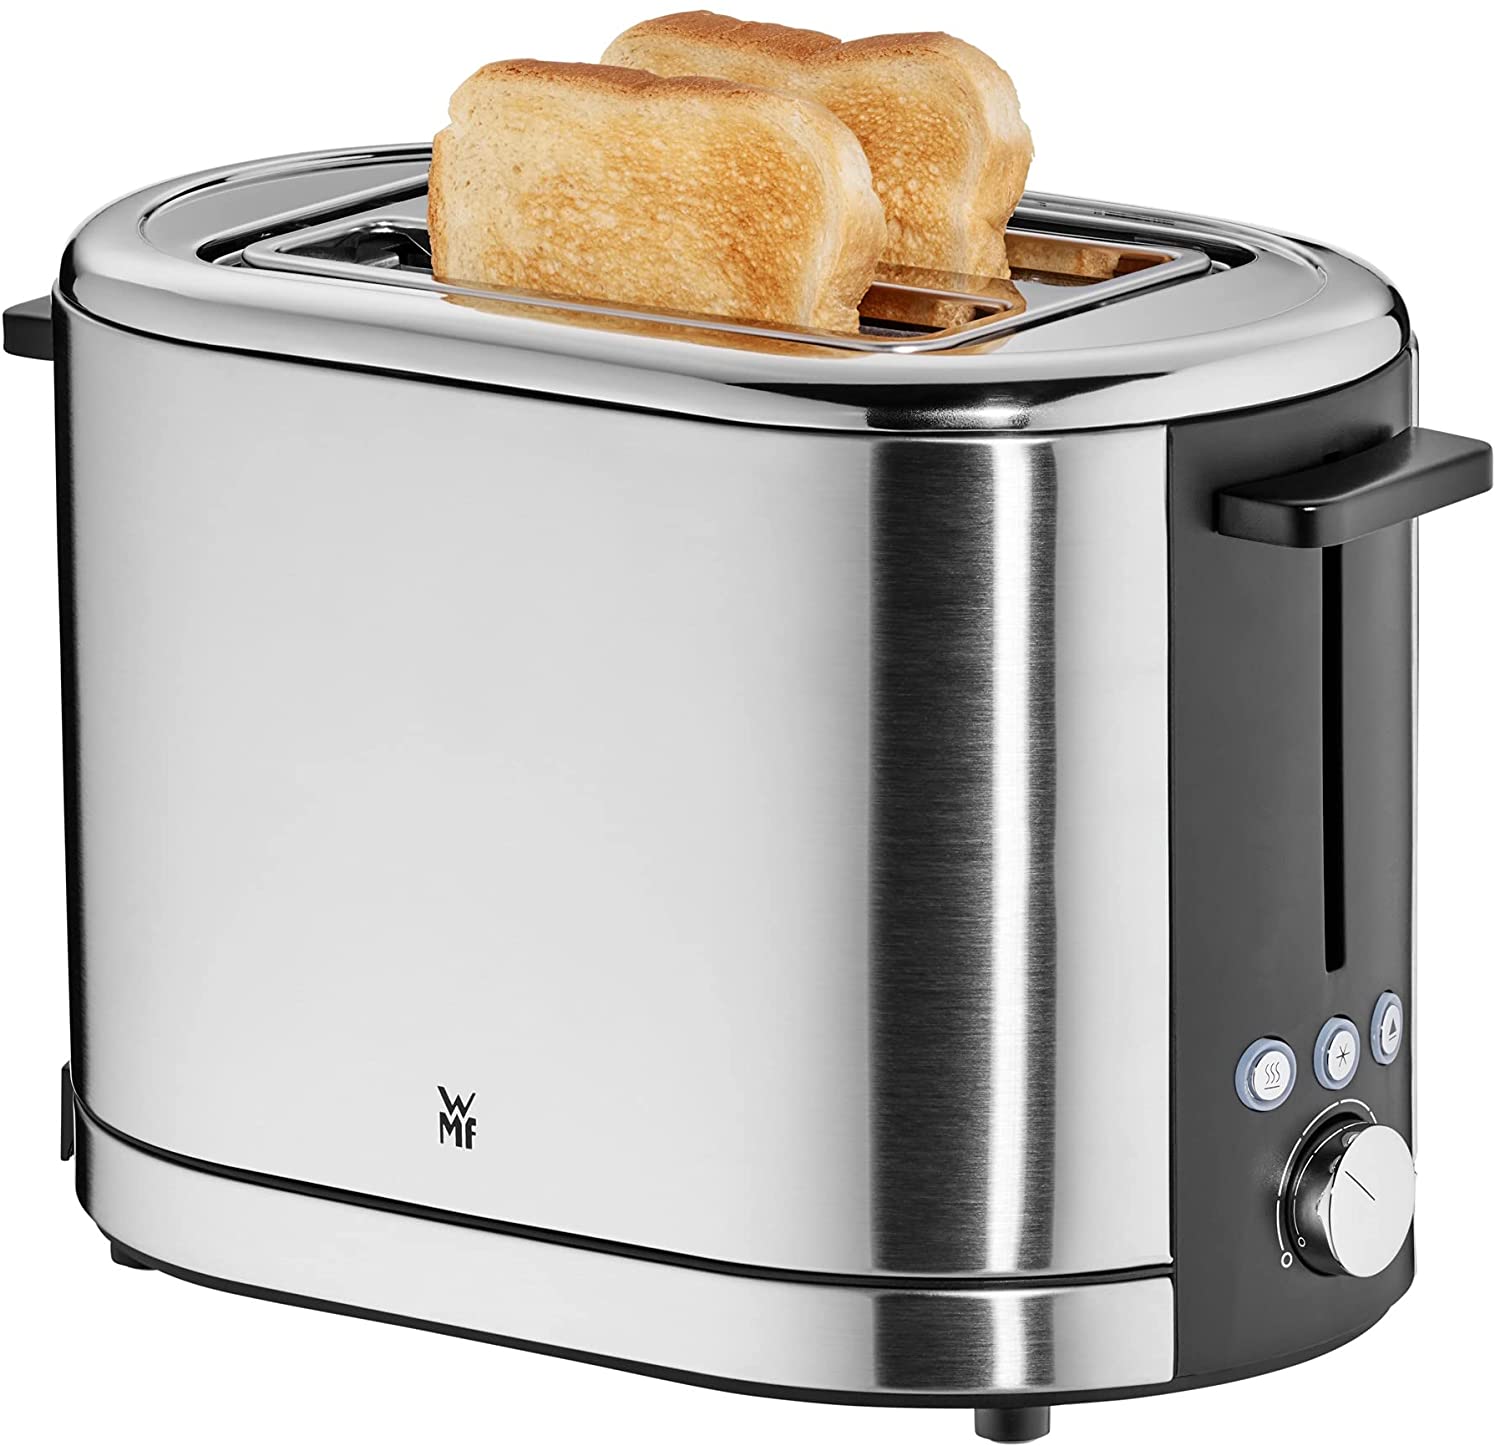 WMF LONO toaster - silver/black